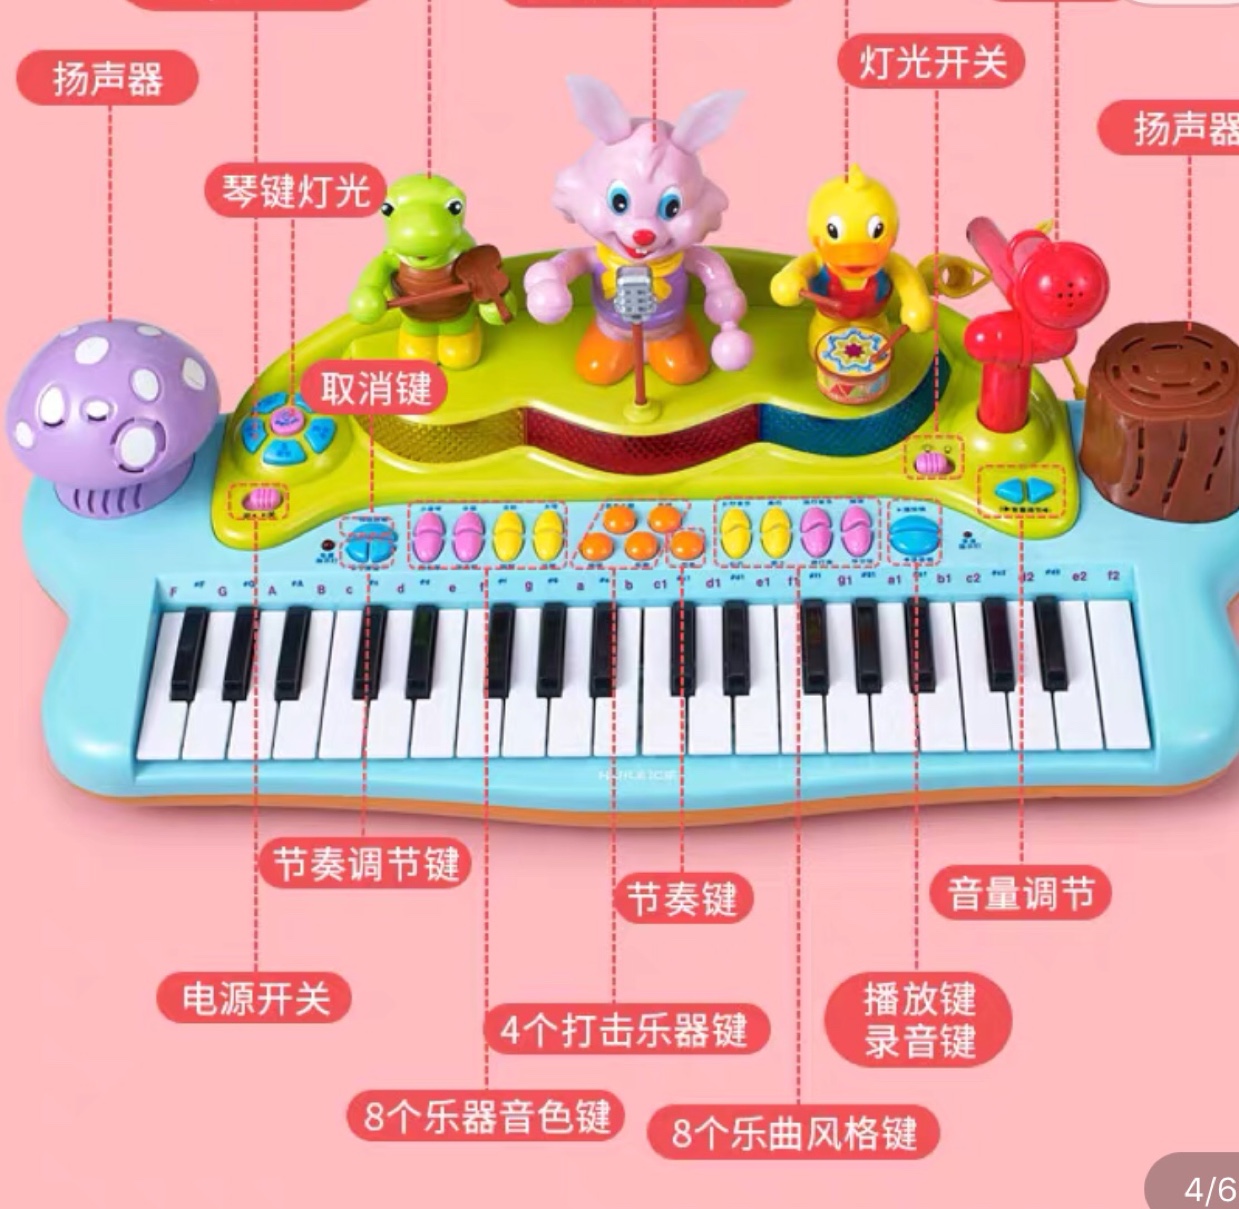 汇乐669多功能儿童初学者益智音乐电子琴有多种模式轻松演奏细节图